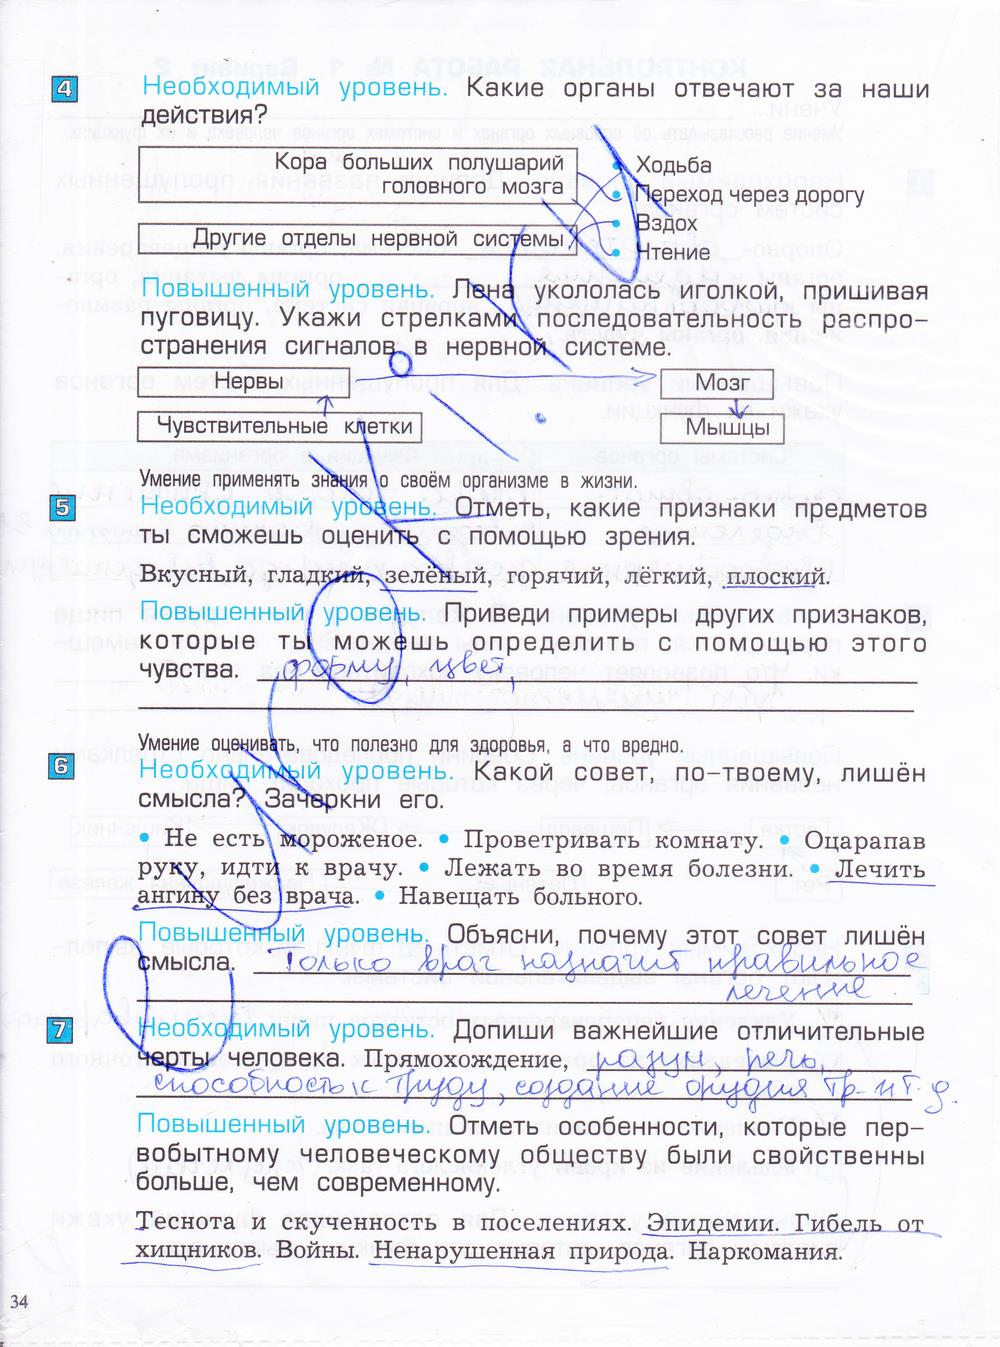 гдз 4 класс проверочные и контрольные работы часть 1 страница 34 окружающий мир Вахрушев, Бурский, Родыгина